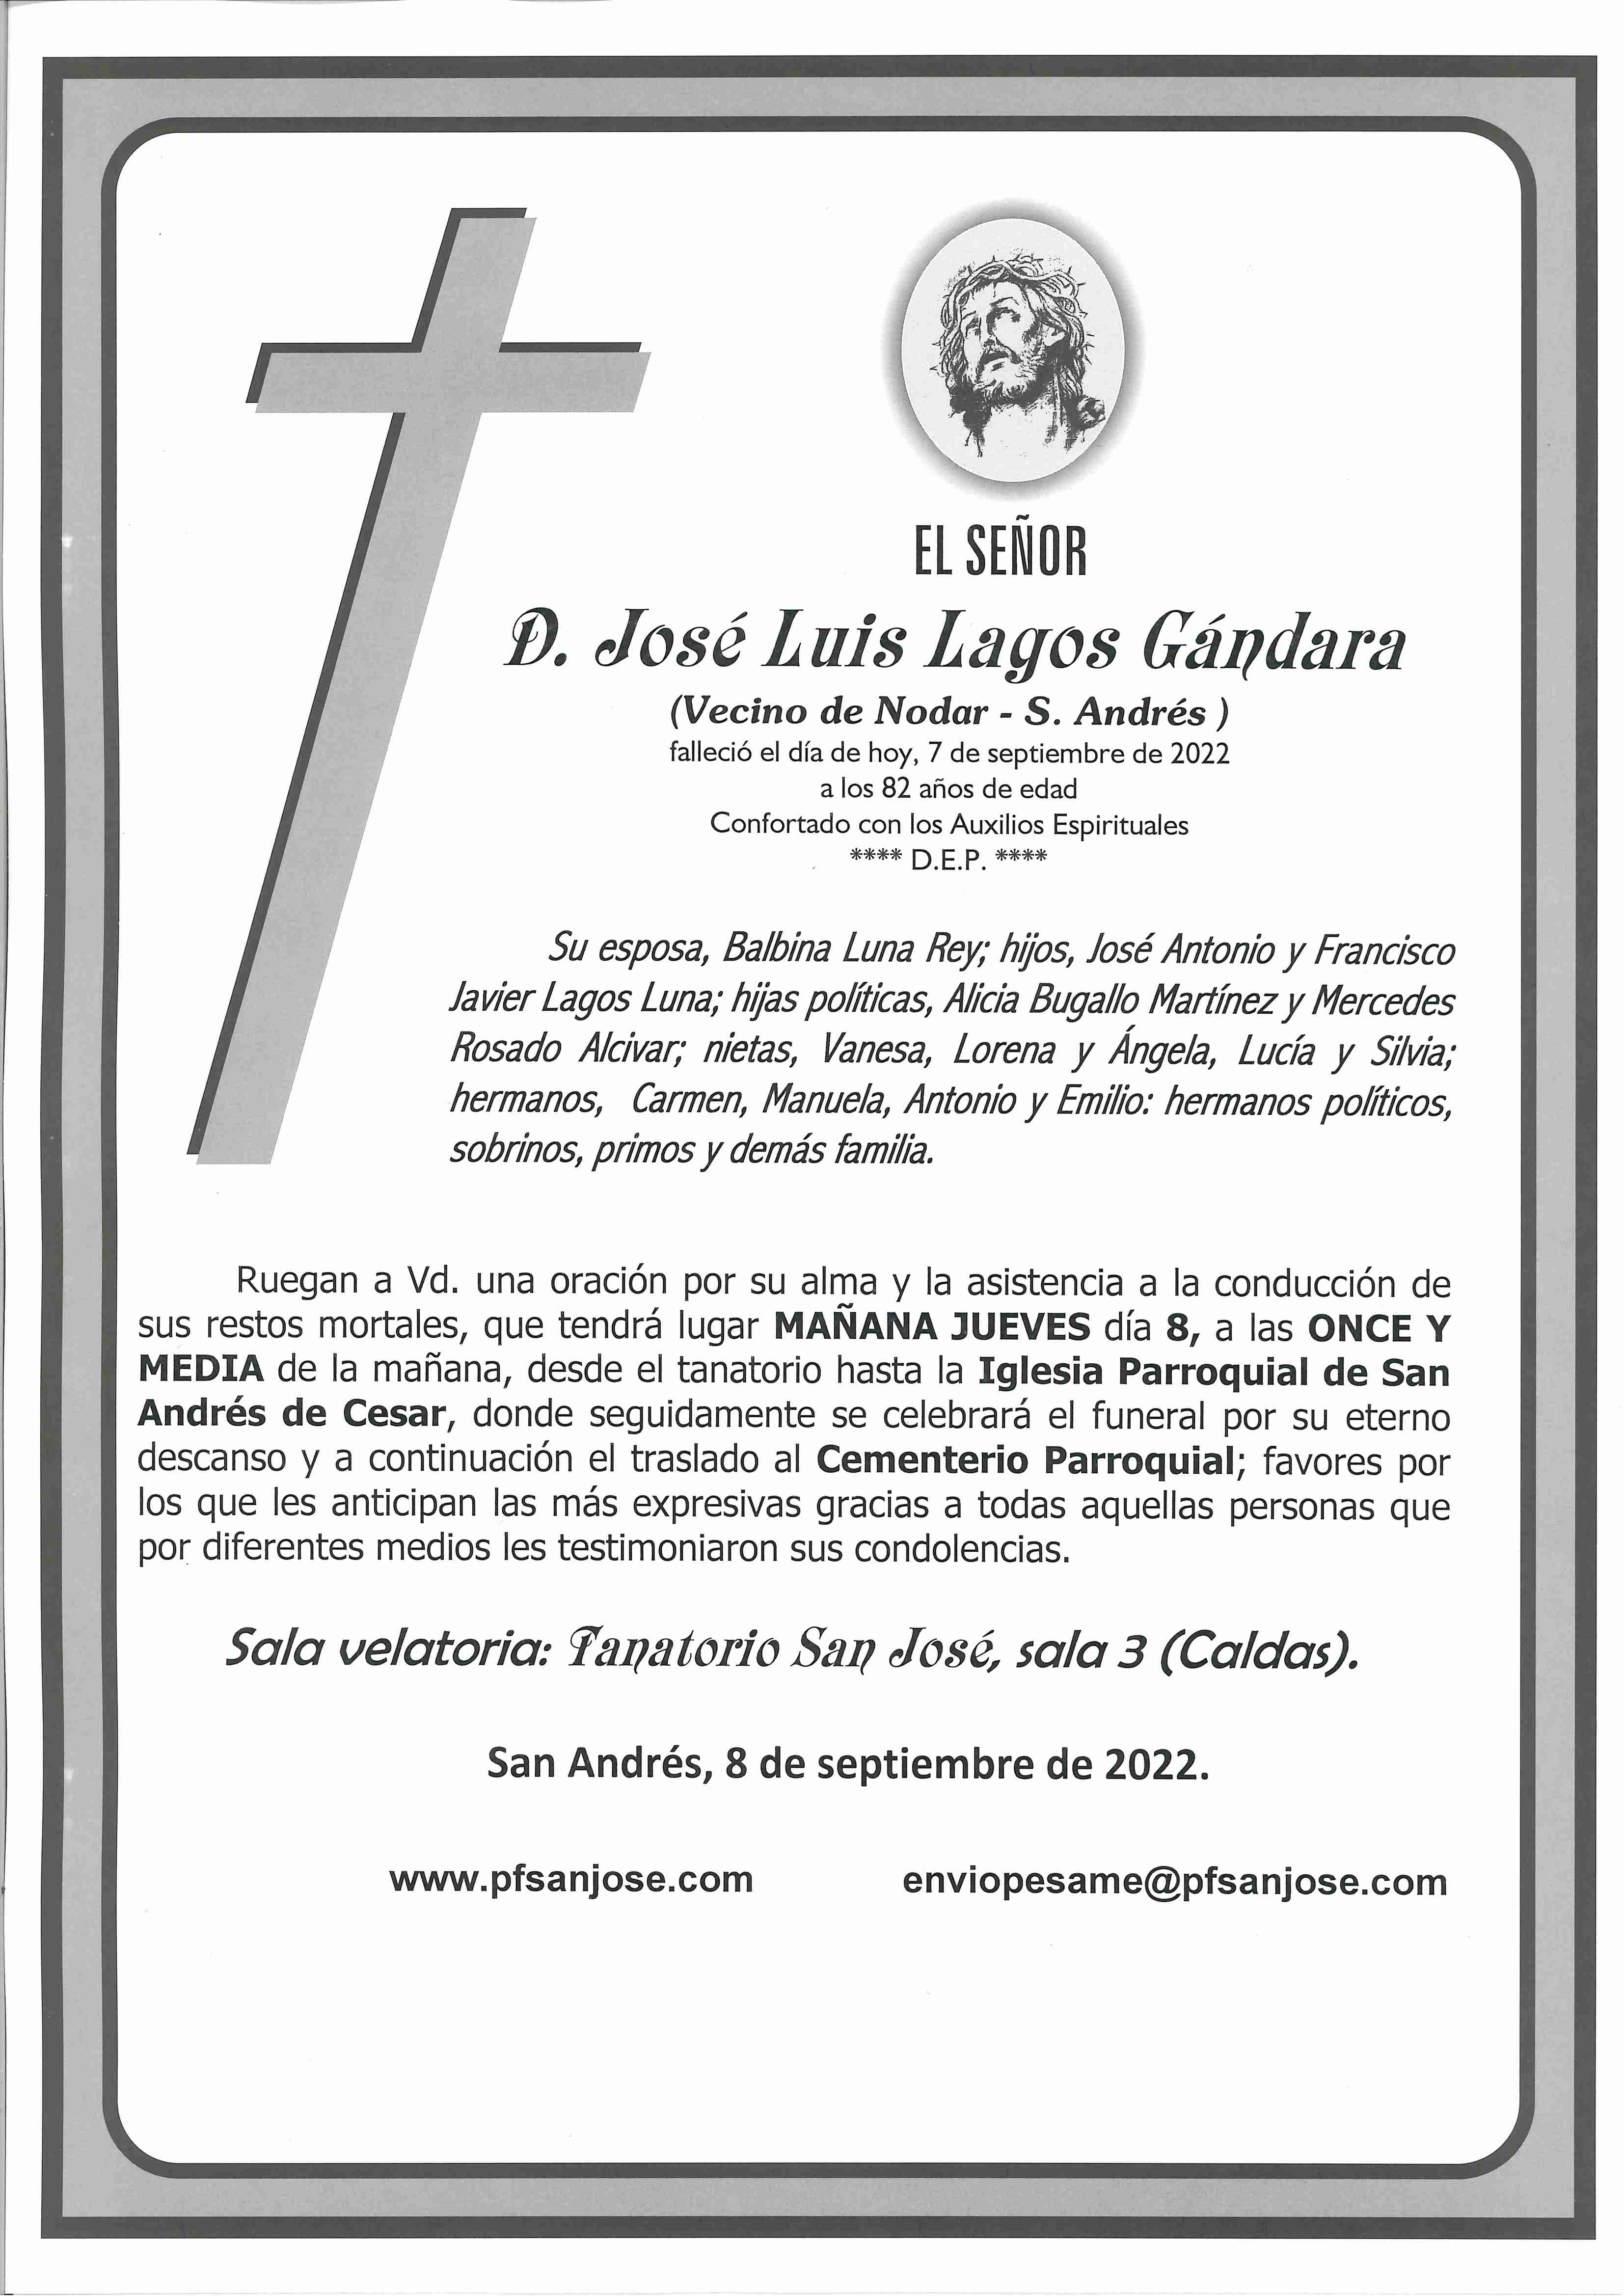 José Luis Lagos Gándara